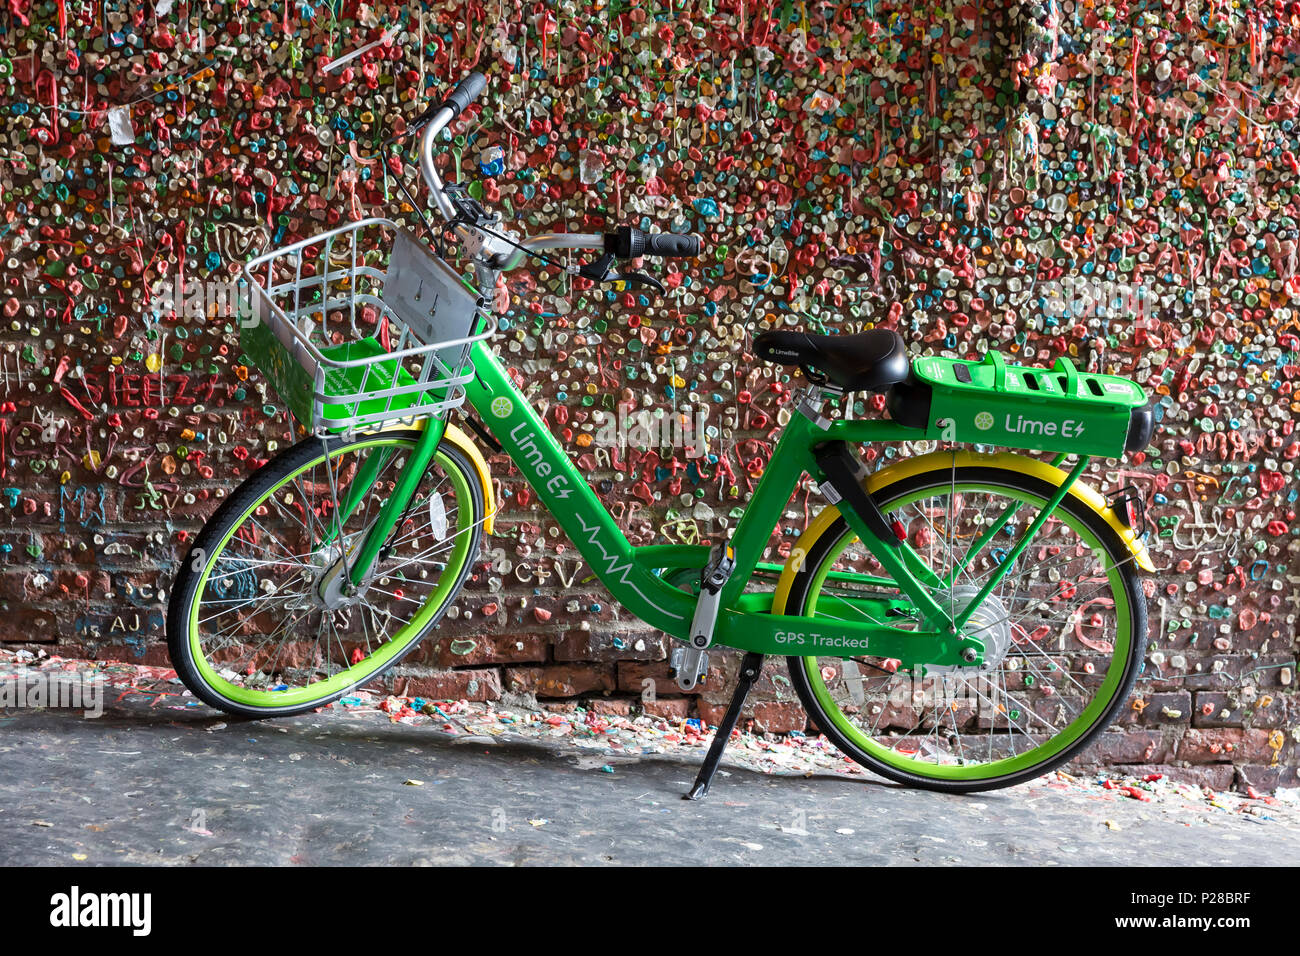 Seattle, Washington: LimeBike elektrische Fahrrad am berühmten Gummi wand Pike's Place Market geparkt. Derzeit in 8 US-amerikanischen Städten aktiv, das Fahrrad teilen Kom Stockfoto